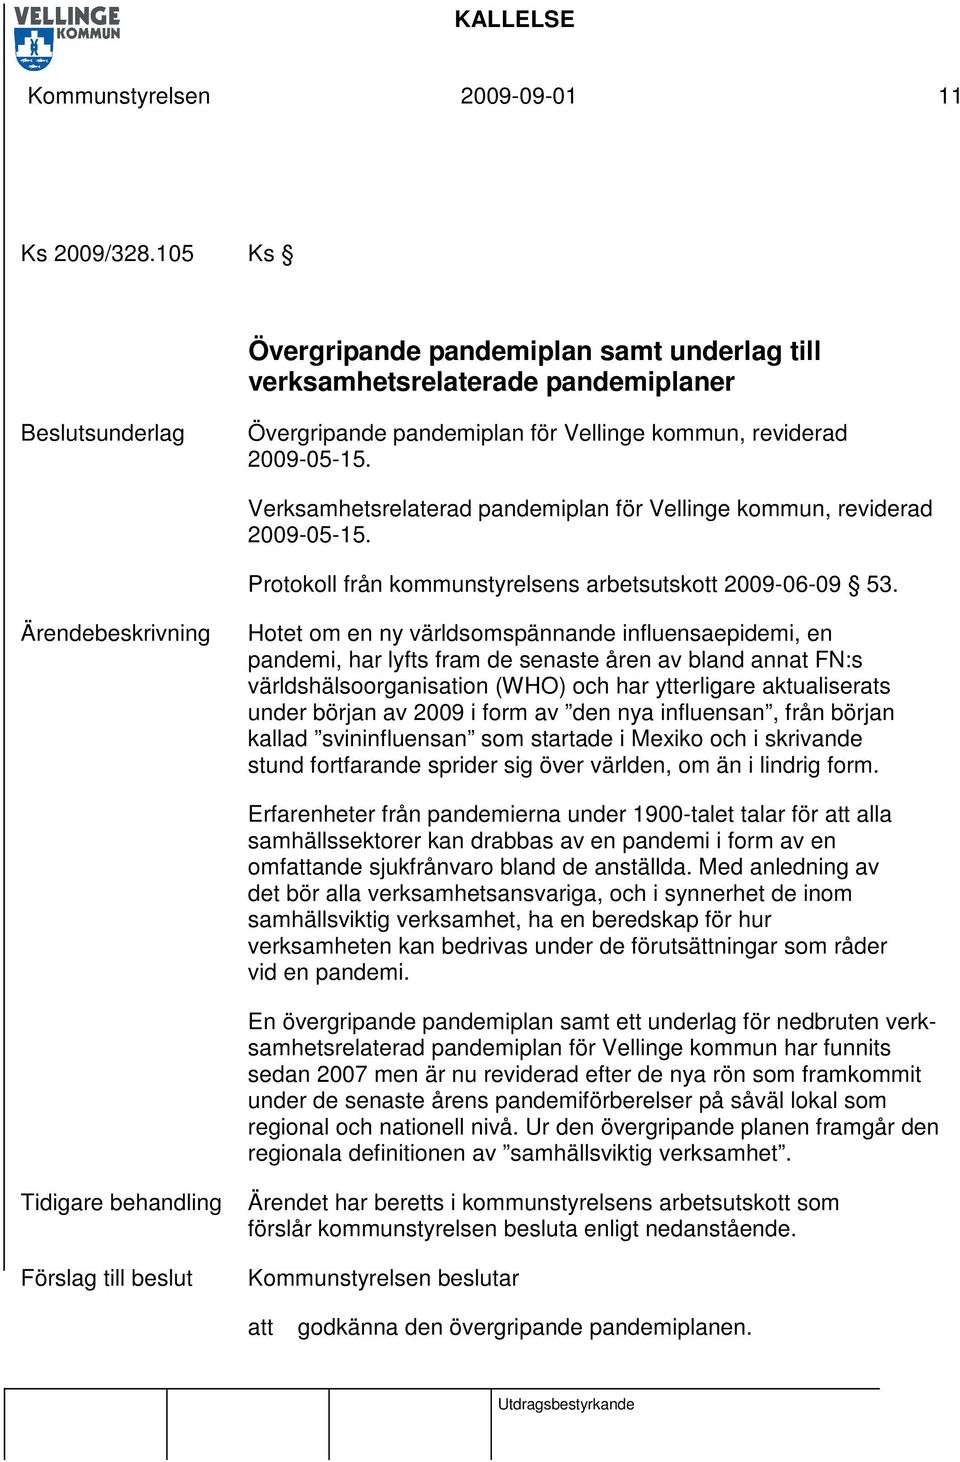 Verksamhetsrelaterad pandemiplan för Vellinge kommun, reviderad 2009-05-15. Protokoll från kommunstyrelsens arbetsutskott 2009-06-09 53.